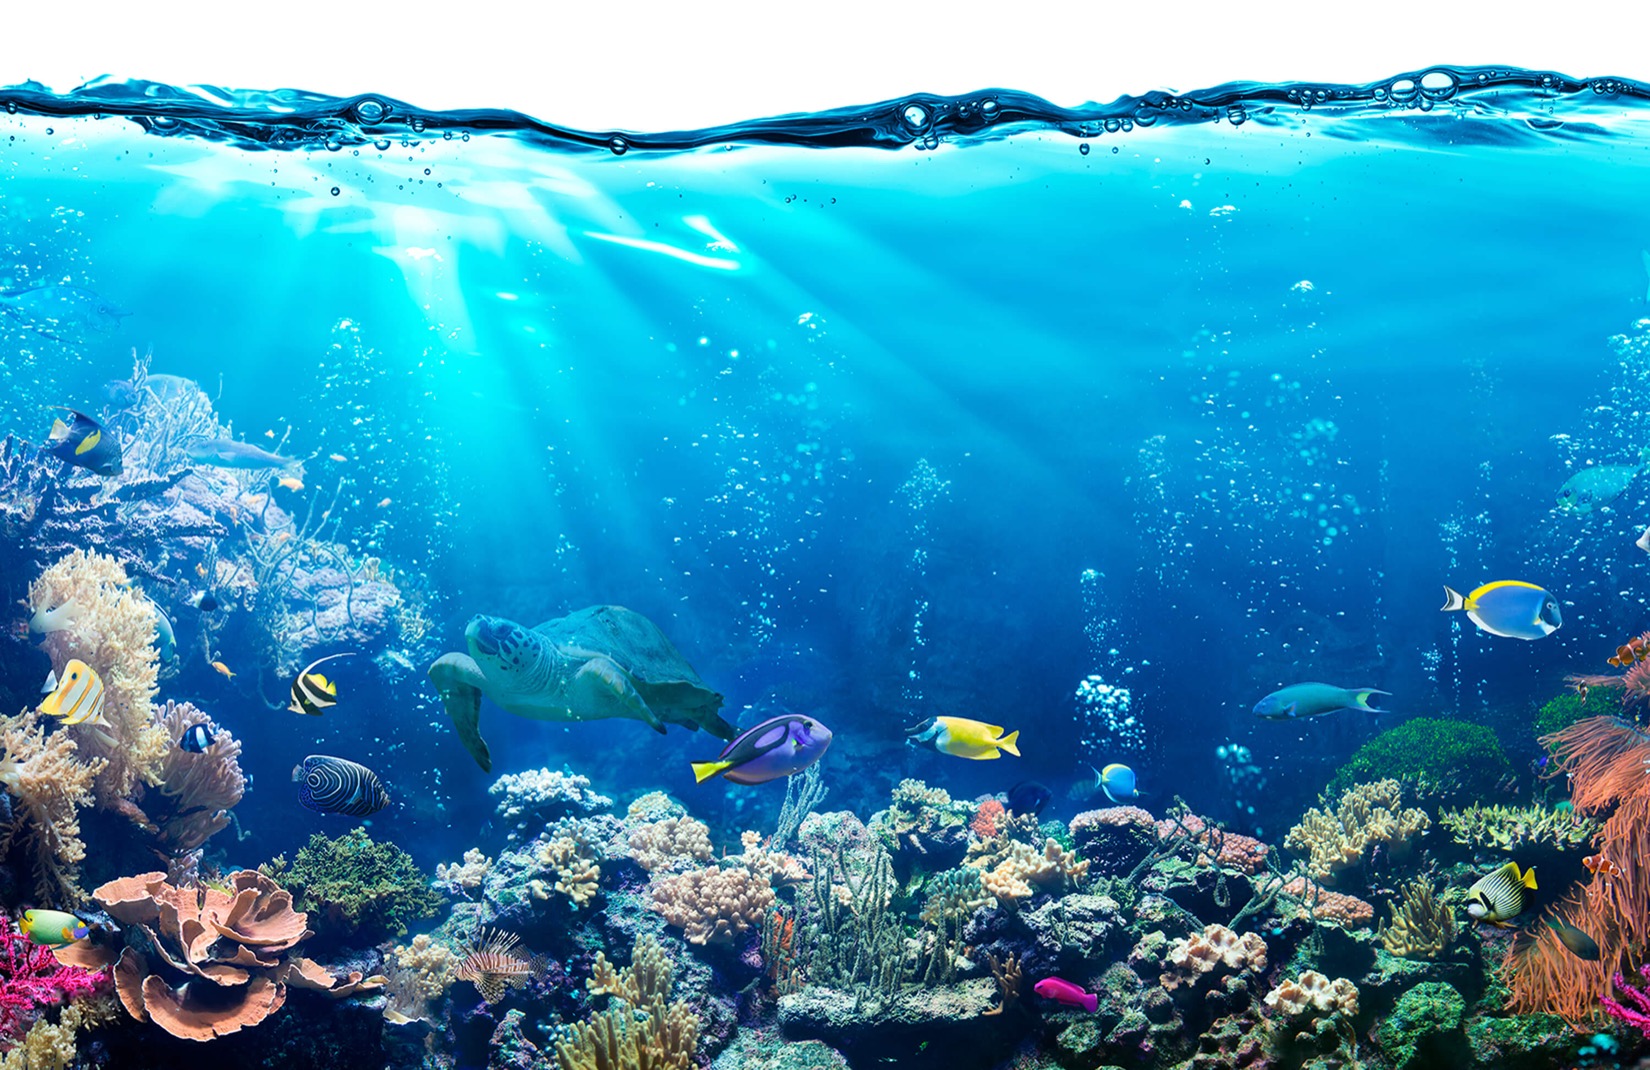 바다 사진 벽지,산호초,수중,암초,해양 생물학,산호초 물고기